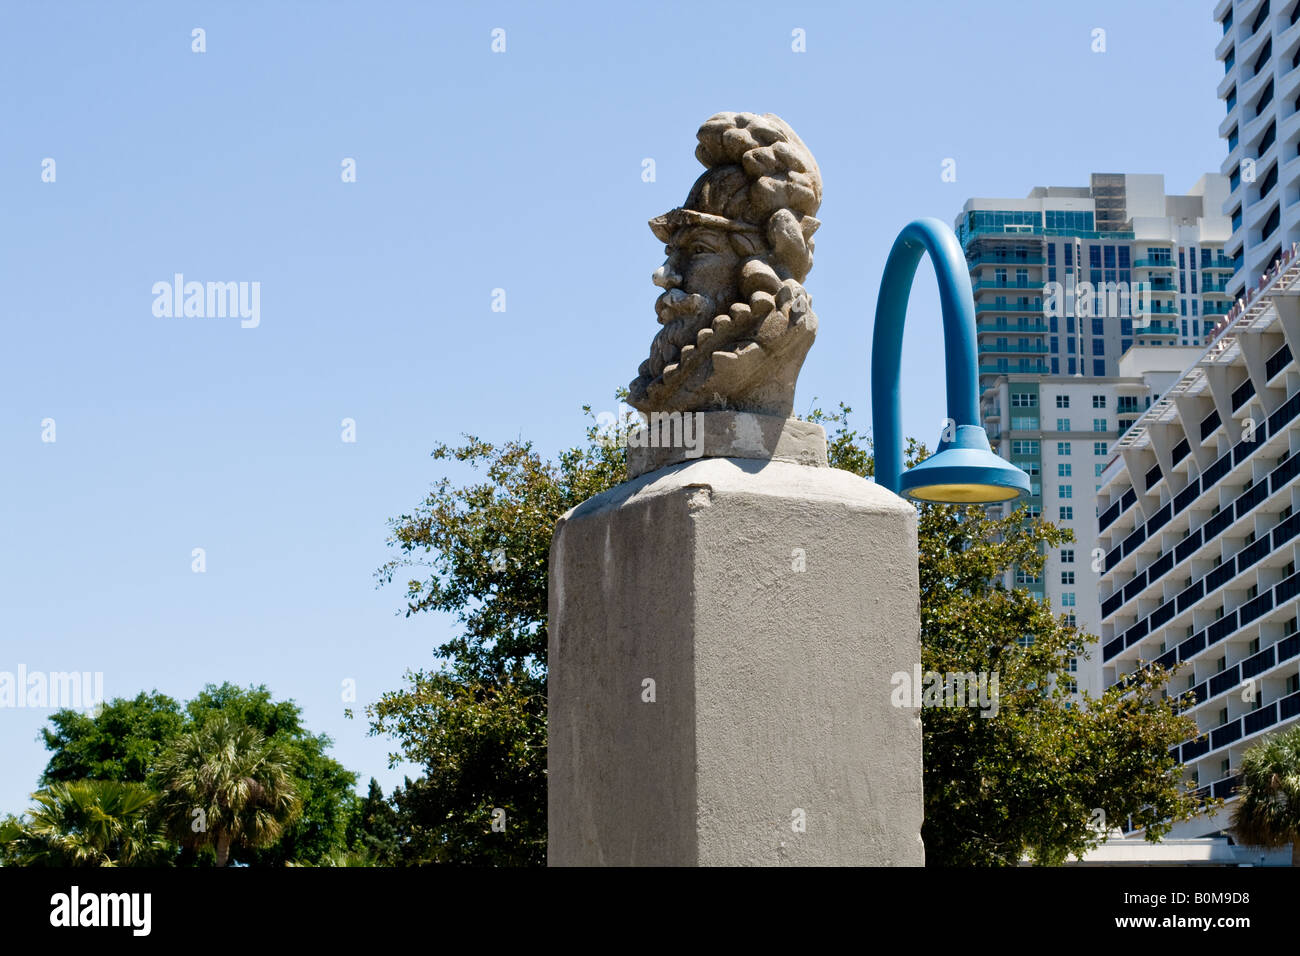 Busto de piedra de Ponce De León sobre pilotes de cemento con un rascacielos en el fondo en Jacksonville, Florida Foto de stock